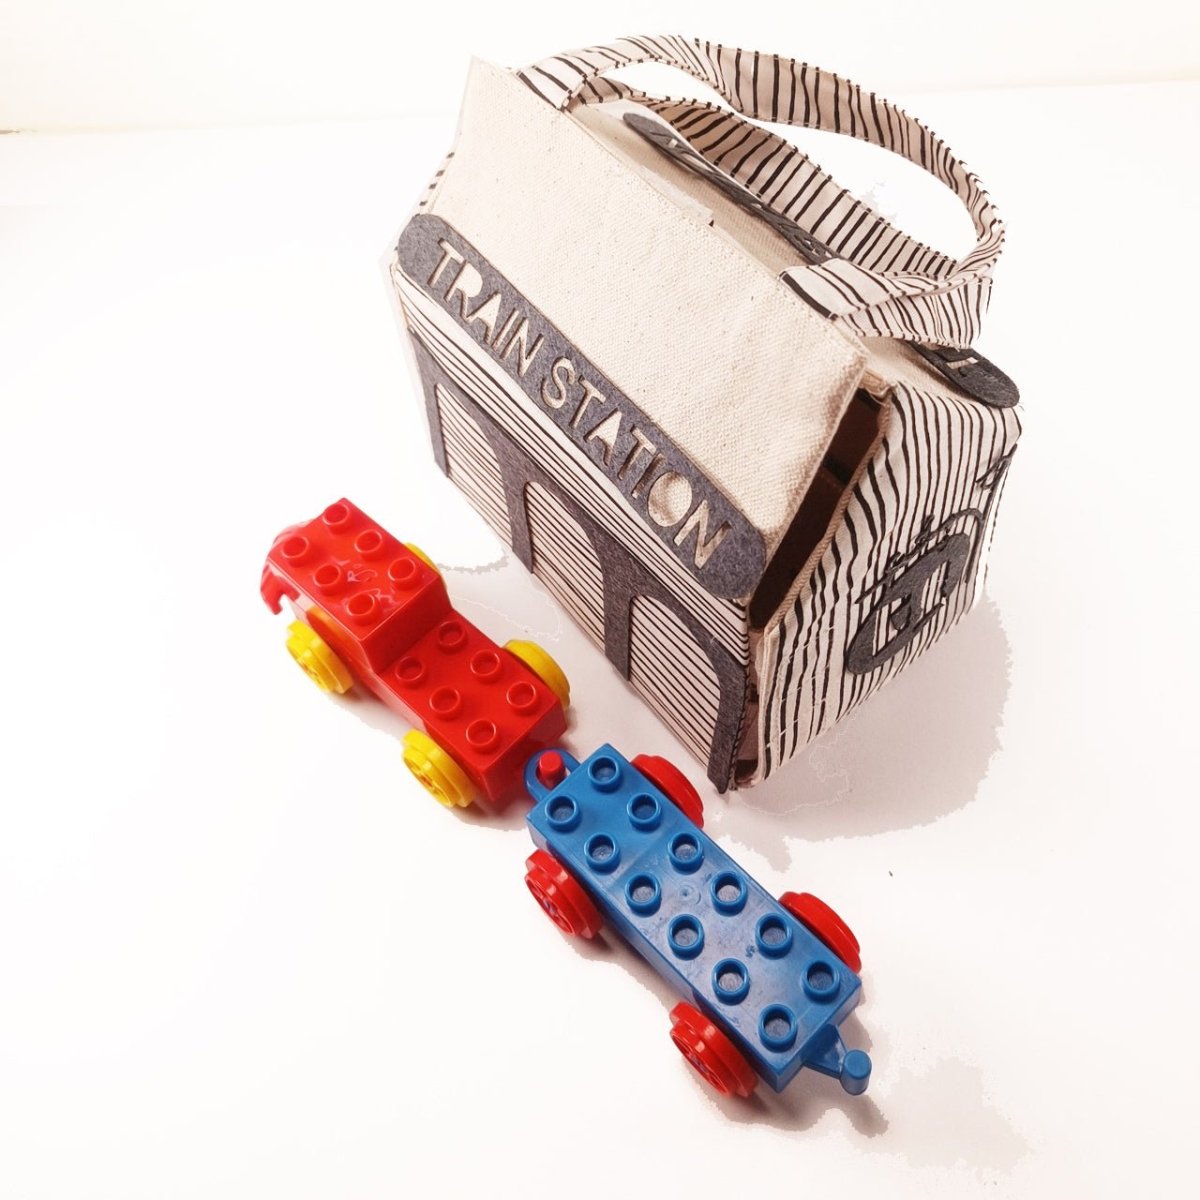 CuddlyCoo Fabric Doll House- Train Station - CCDOLLHOUSEBAGTRAINSTATION